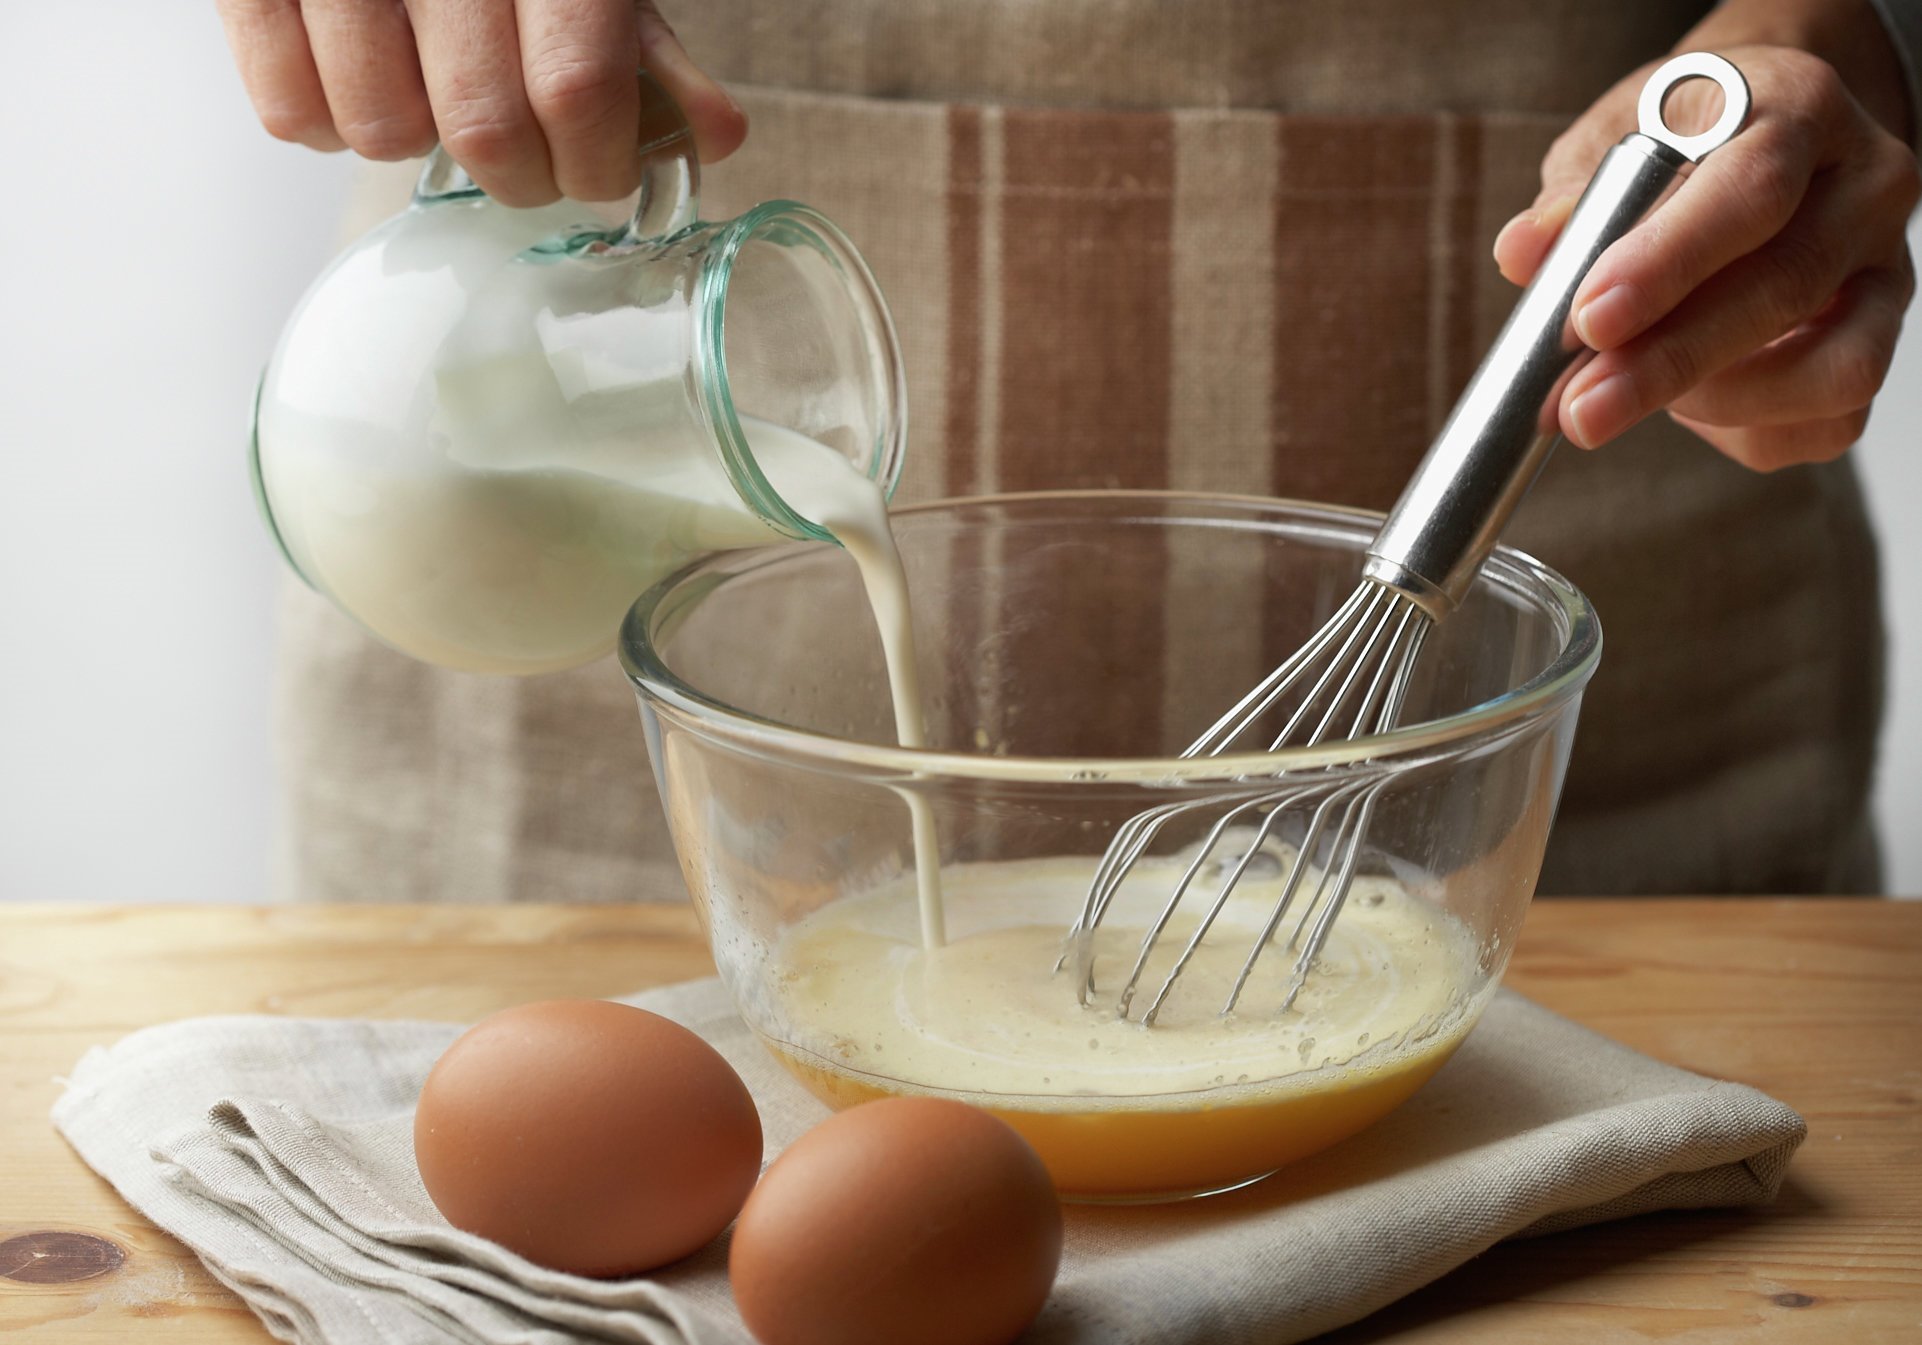 2. Bate los huevos con nata